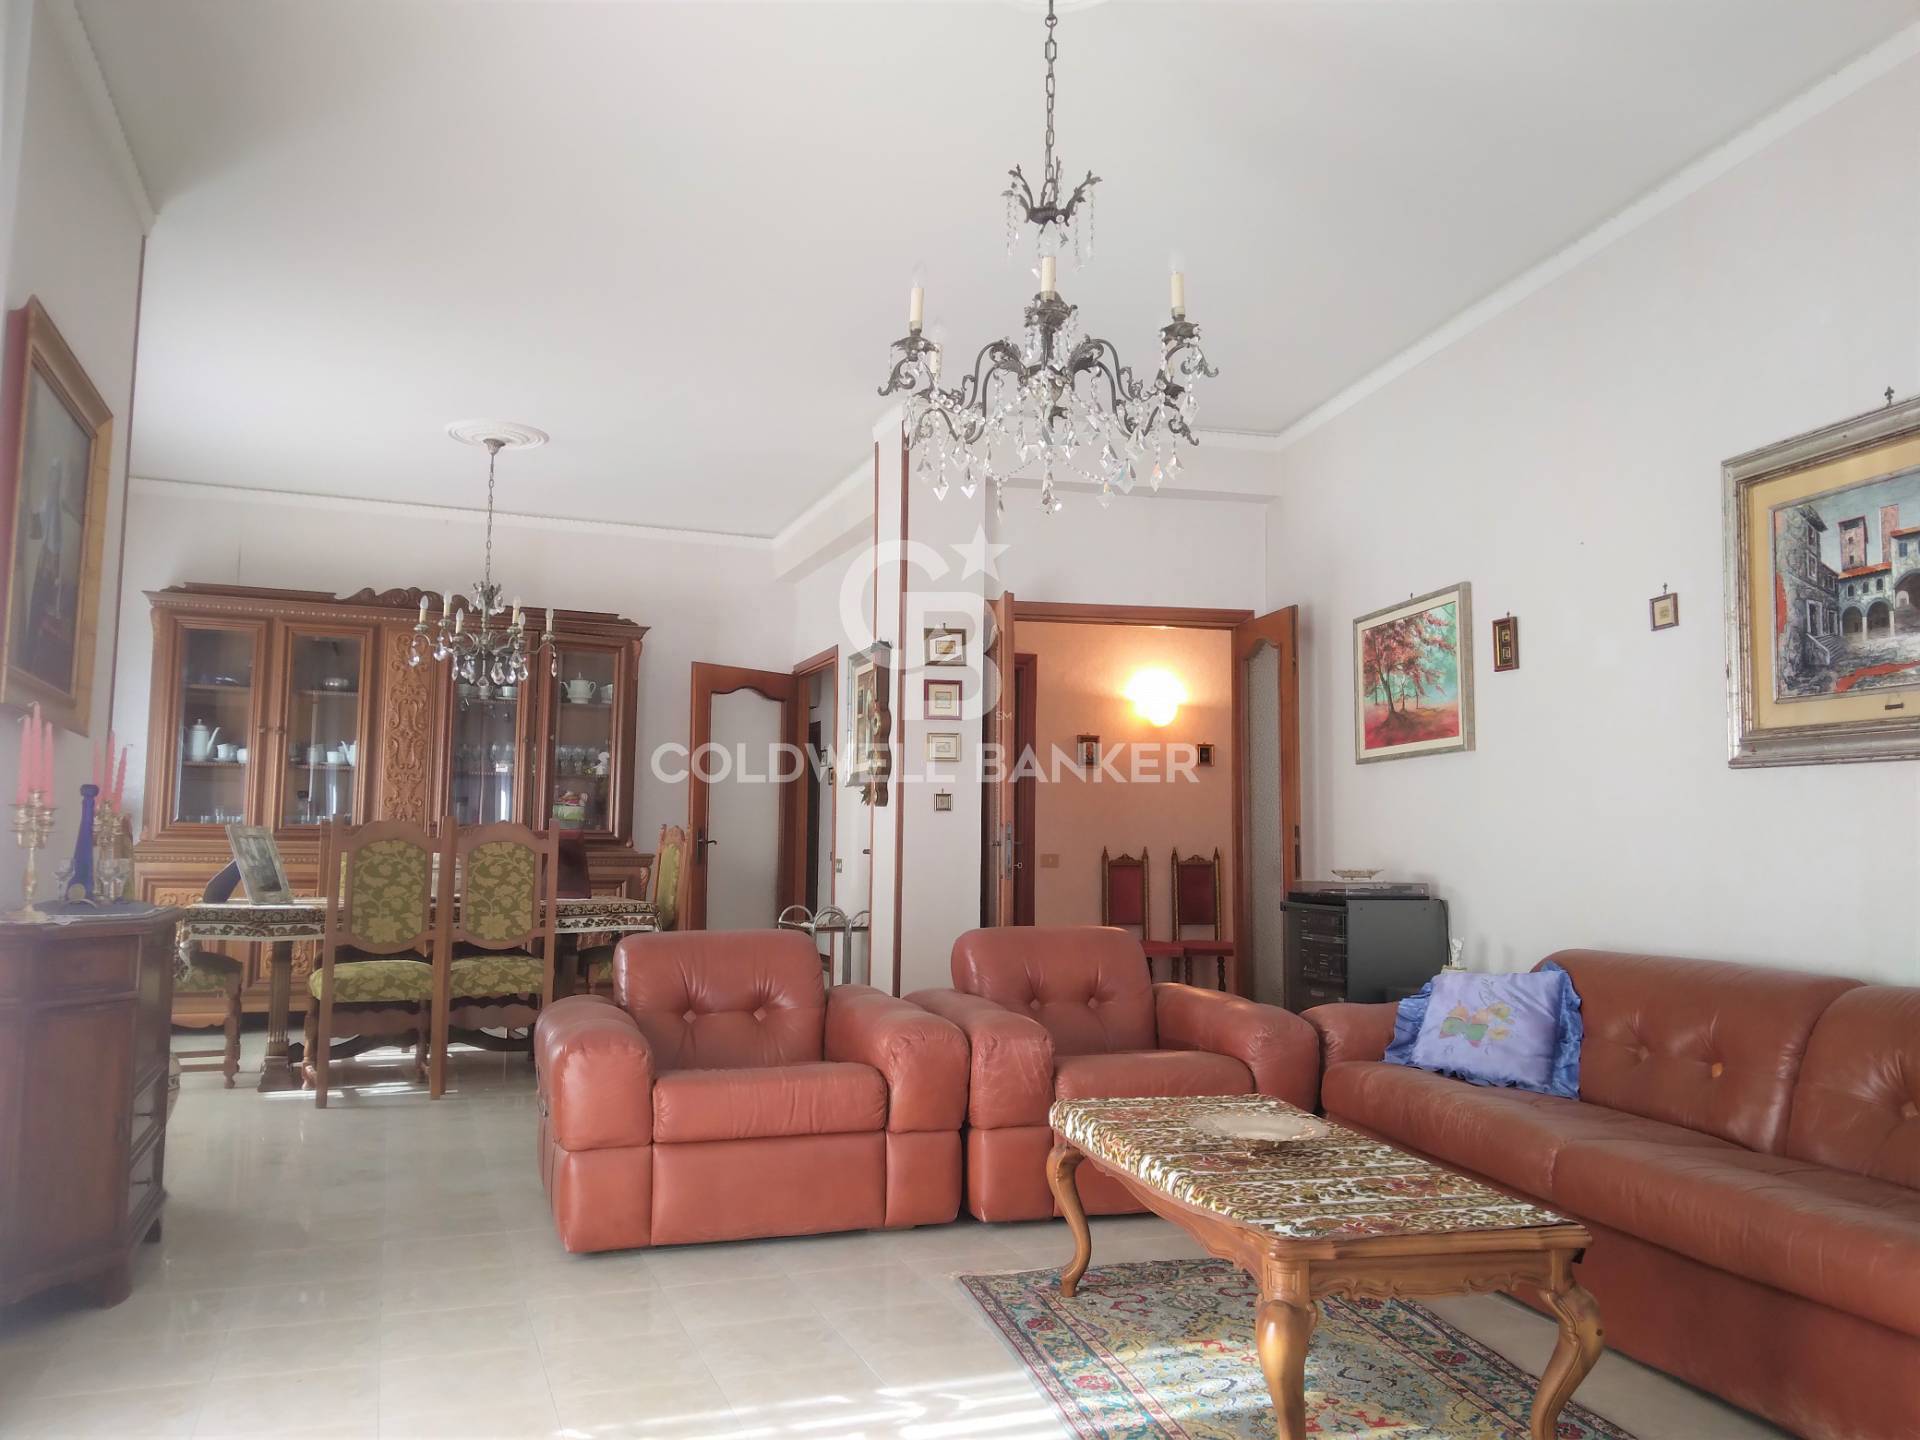 Appartamento in vendita a Viterbo, 8 locali, prezzo € 190.000 | PortaleAgenzieImmobiliari.it